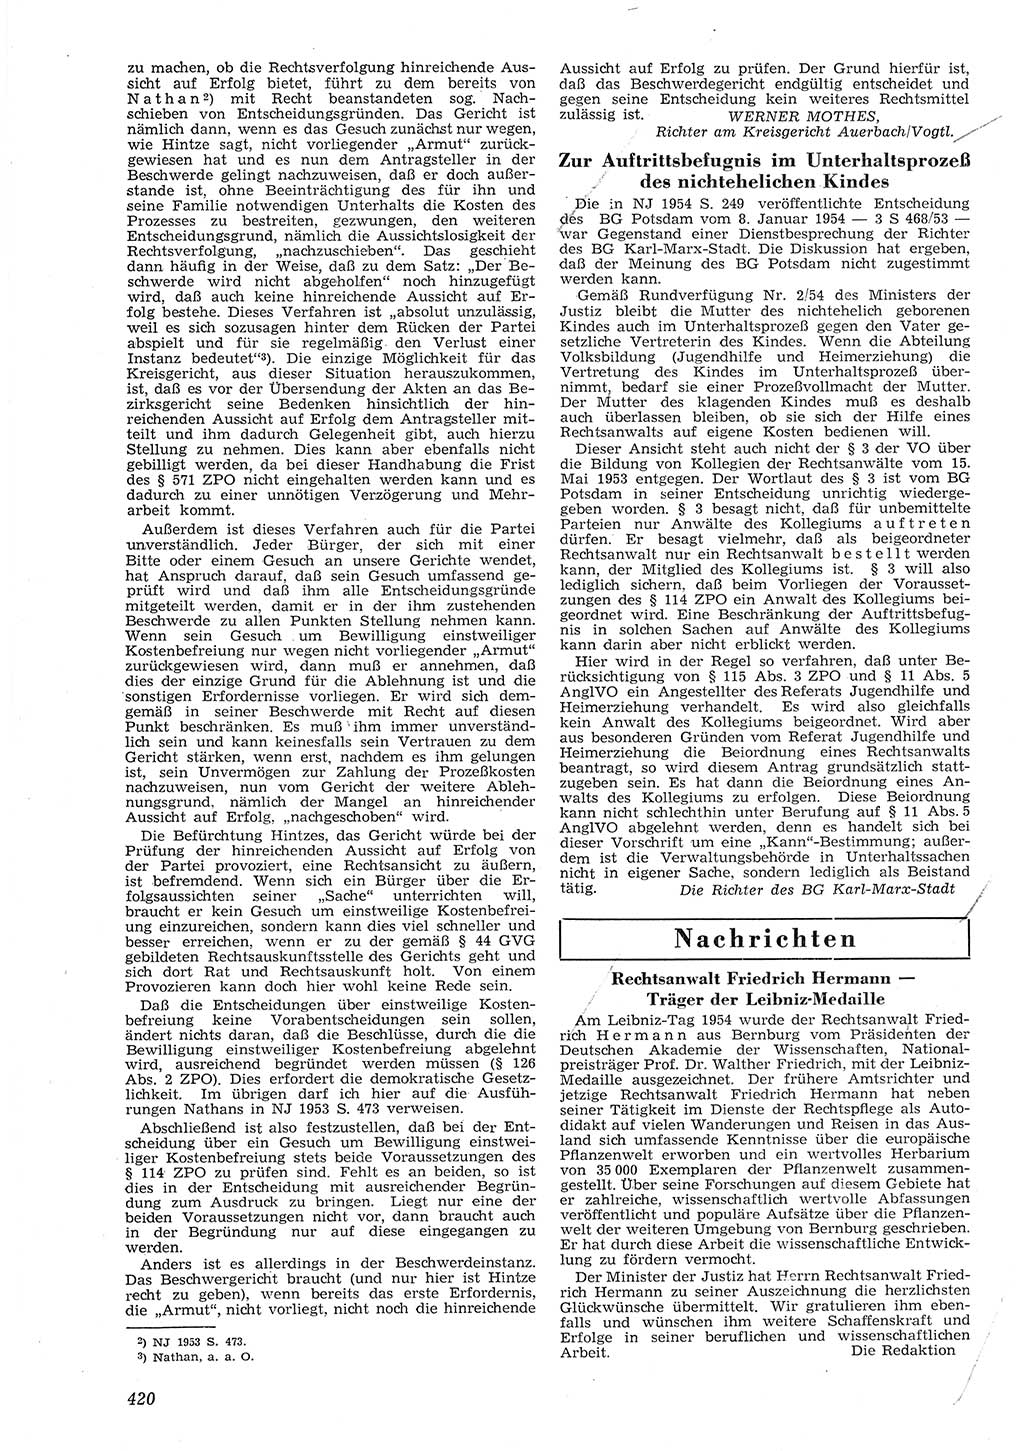 Neue Justiz (NJ), Zeitschrift für Recht und Rechtswissenschaft [Deutsche Demokratische Republik (DDR)], 8. Jahrgang 1954, Seite 420 (NJ DDR 1954, S. 420)